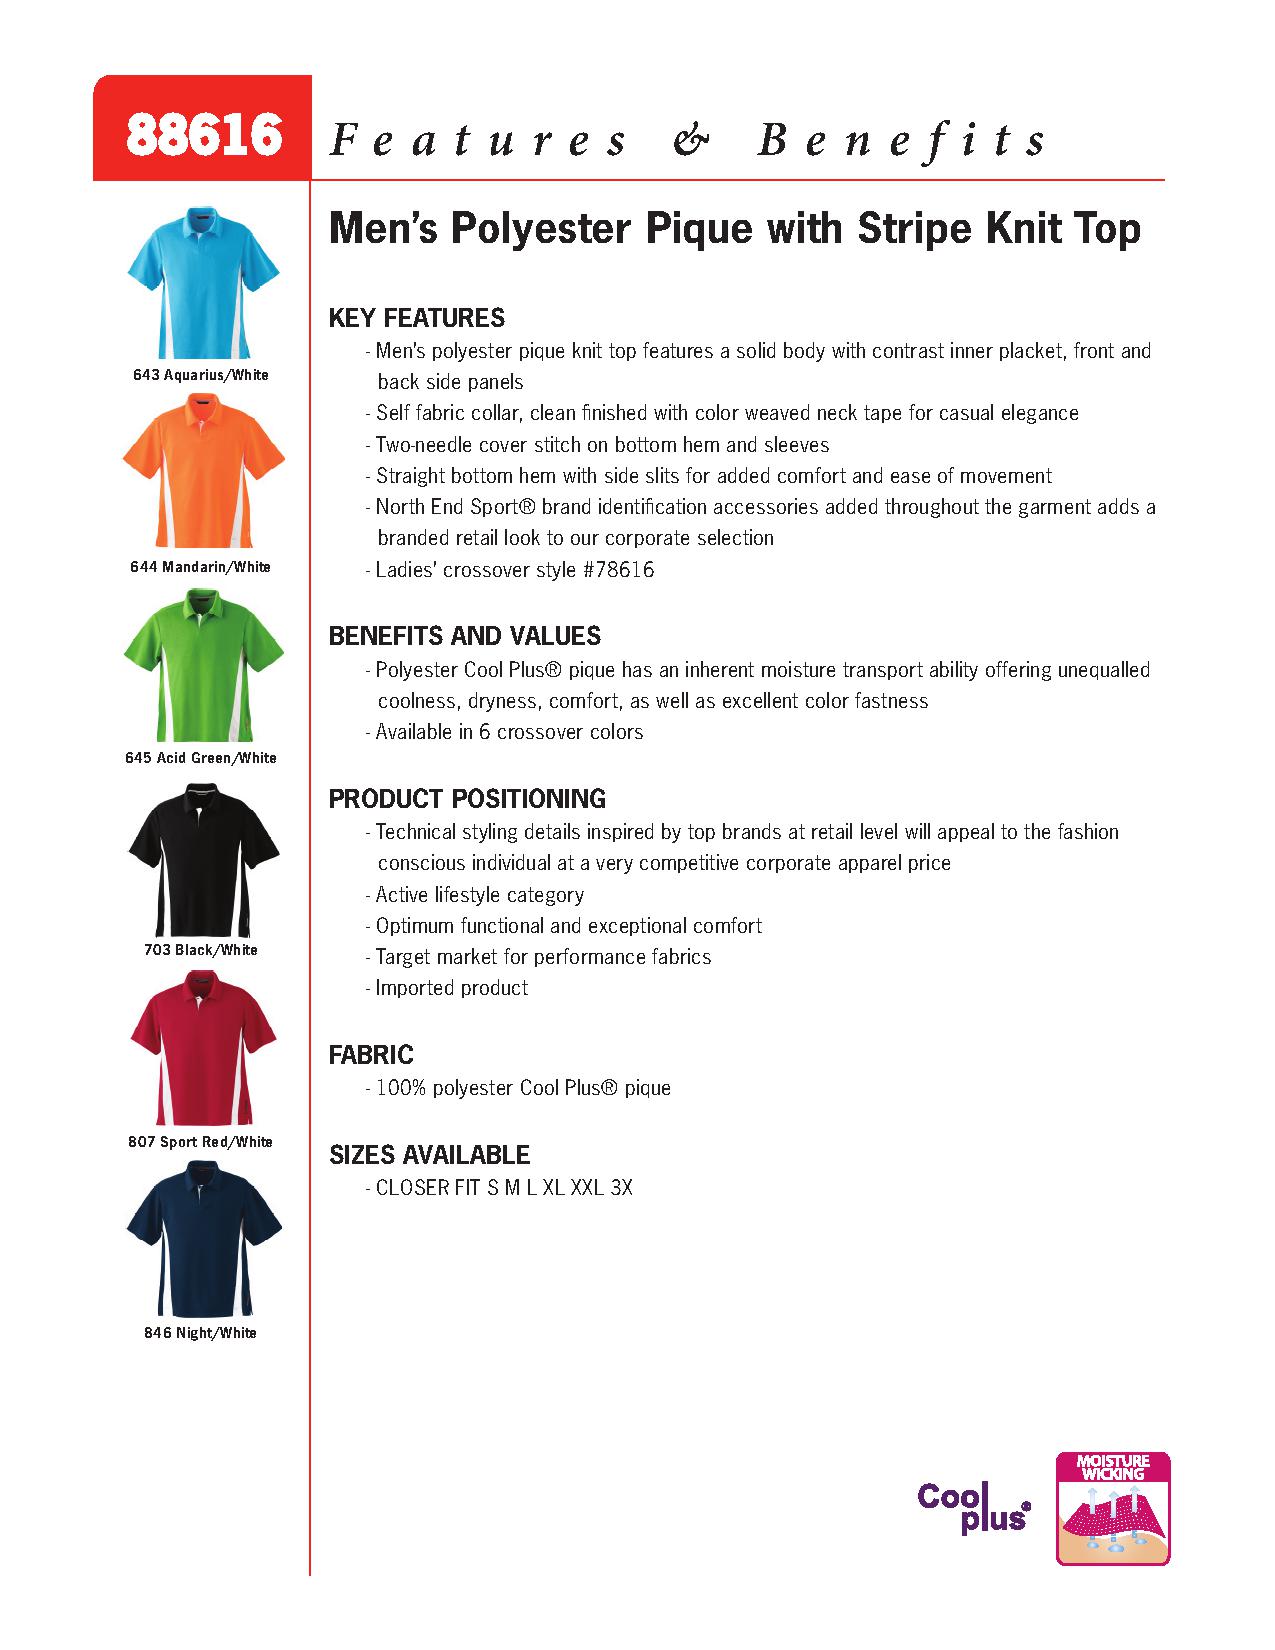 Ash City Pique 88616 - Men's Polyester Pique Polo With Stripe